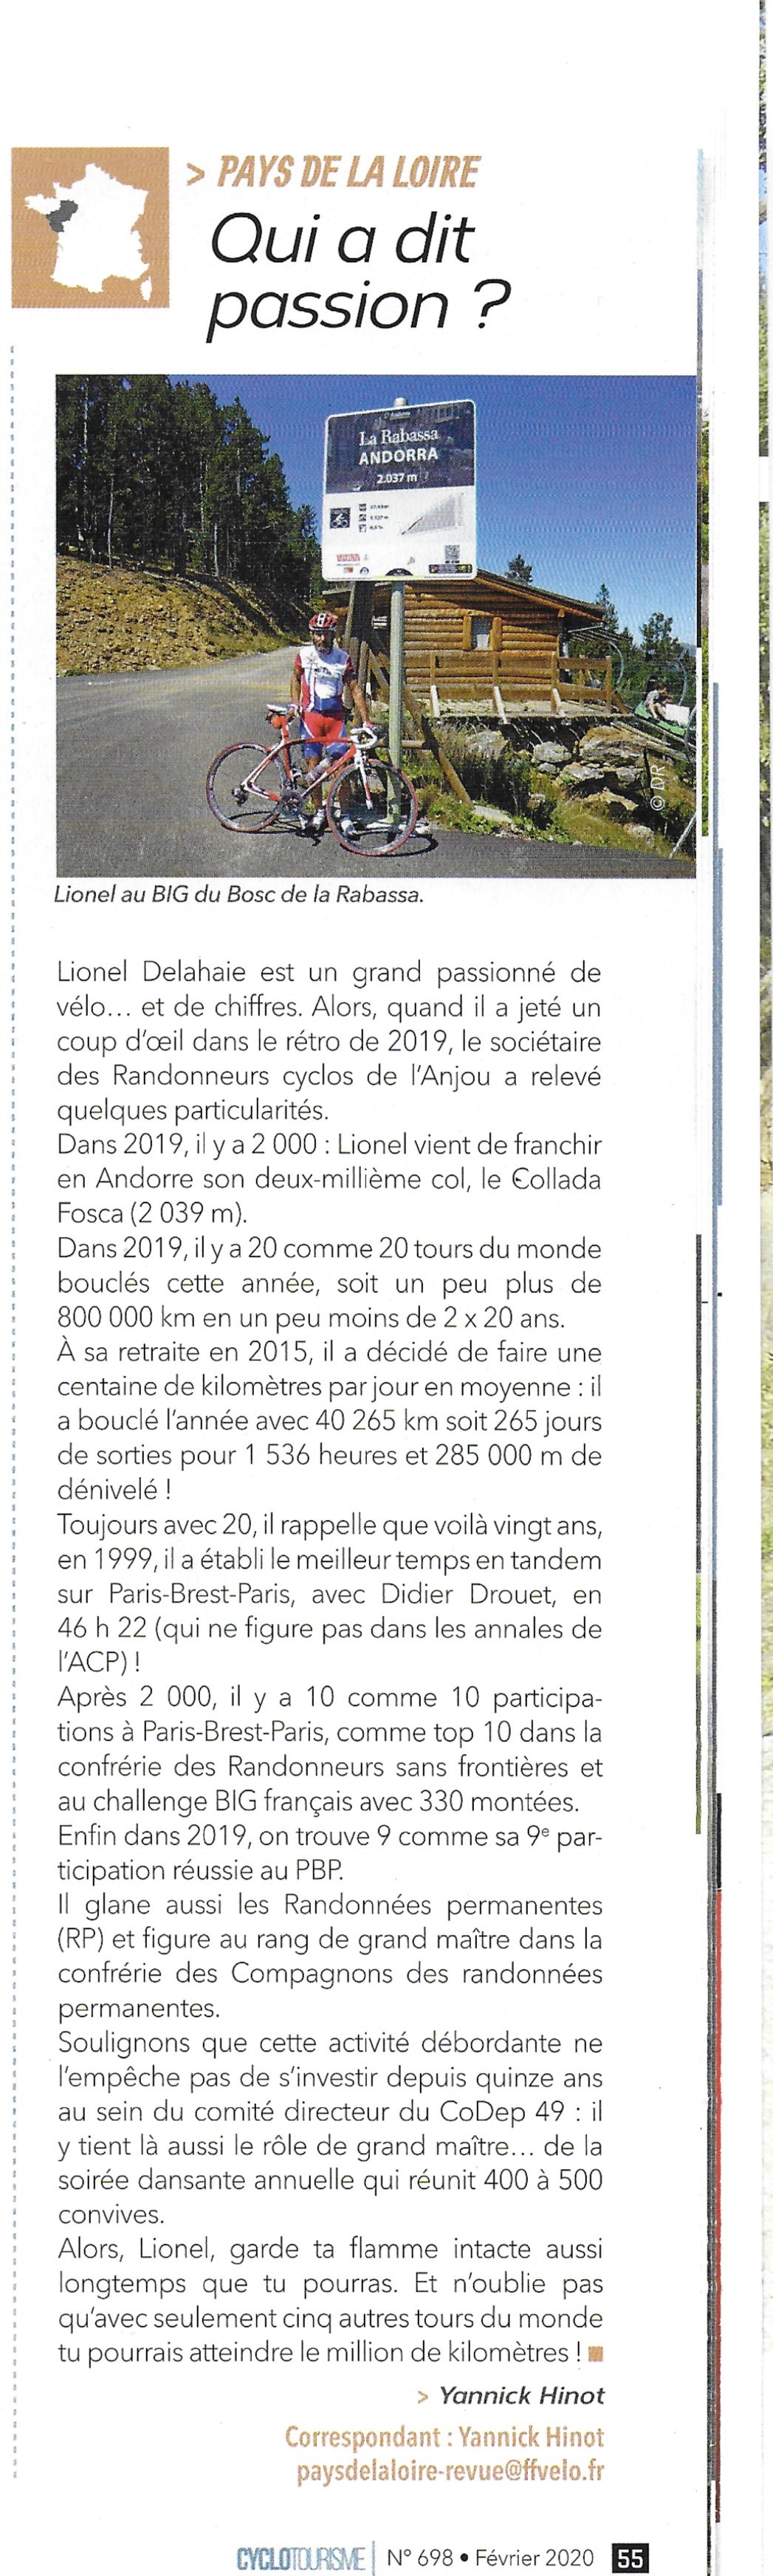 2020 02 17 article revue cyclo Delahaie